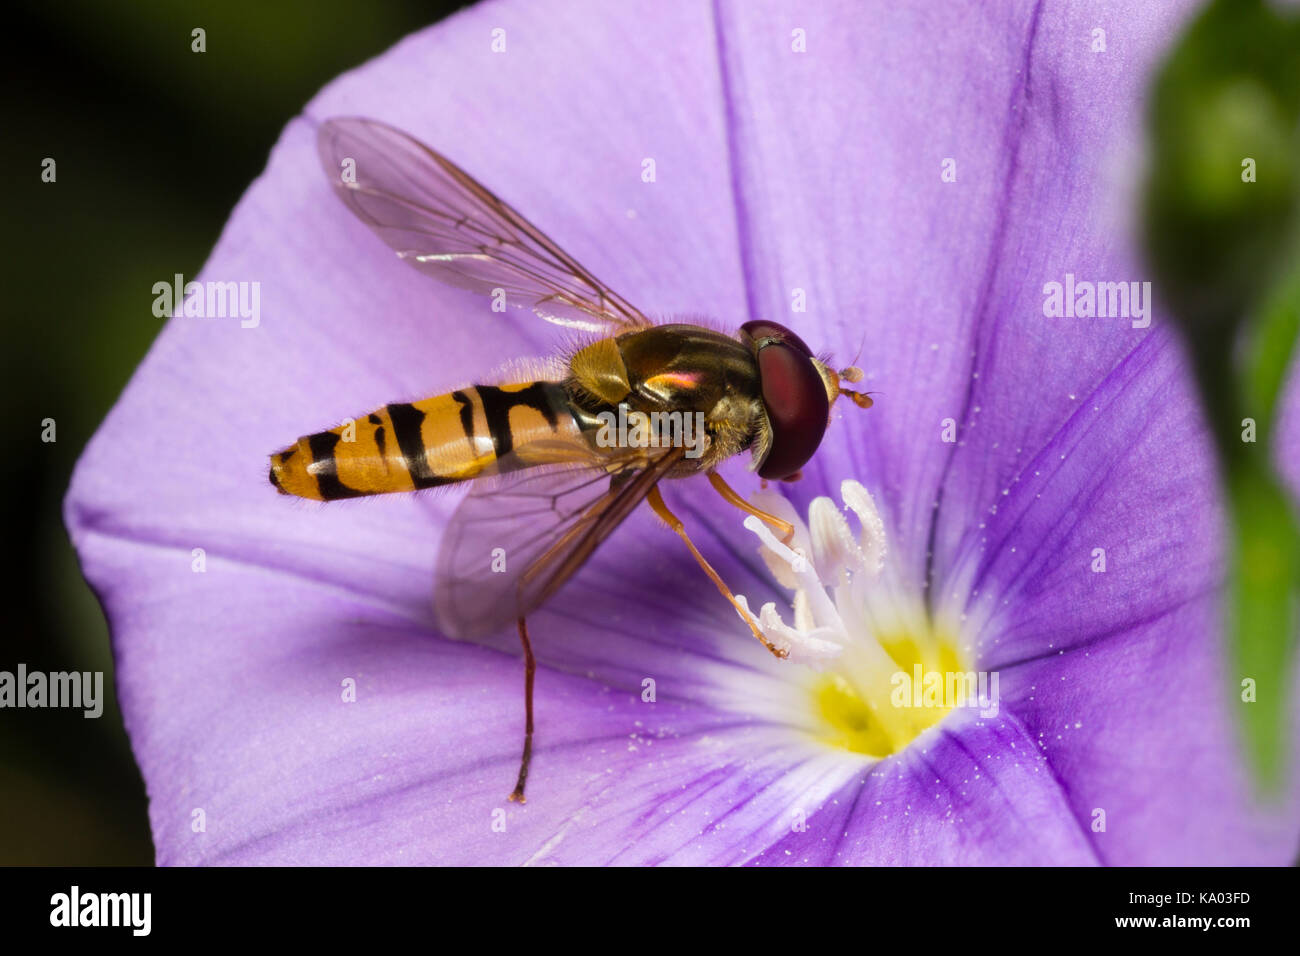 Wasp imitar masculino británico hoverfly Episyrphus balteatus, mermelada, alimentándose de la flor azul de Convolvulus sabatius Foto de stock